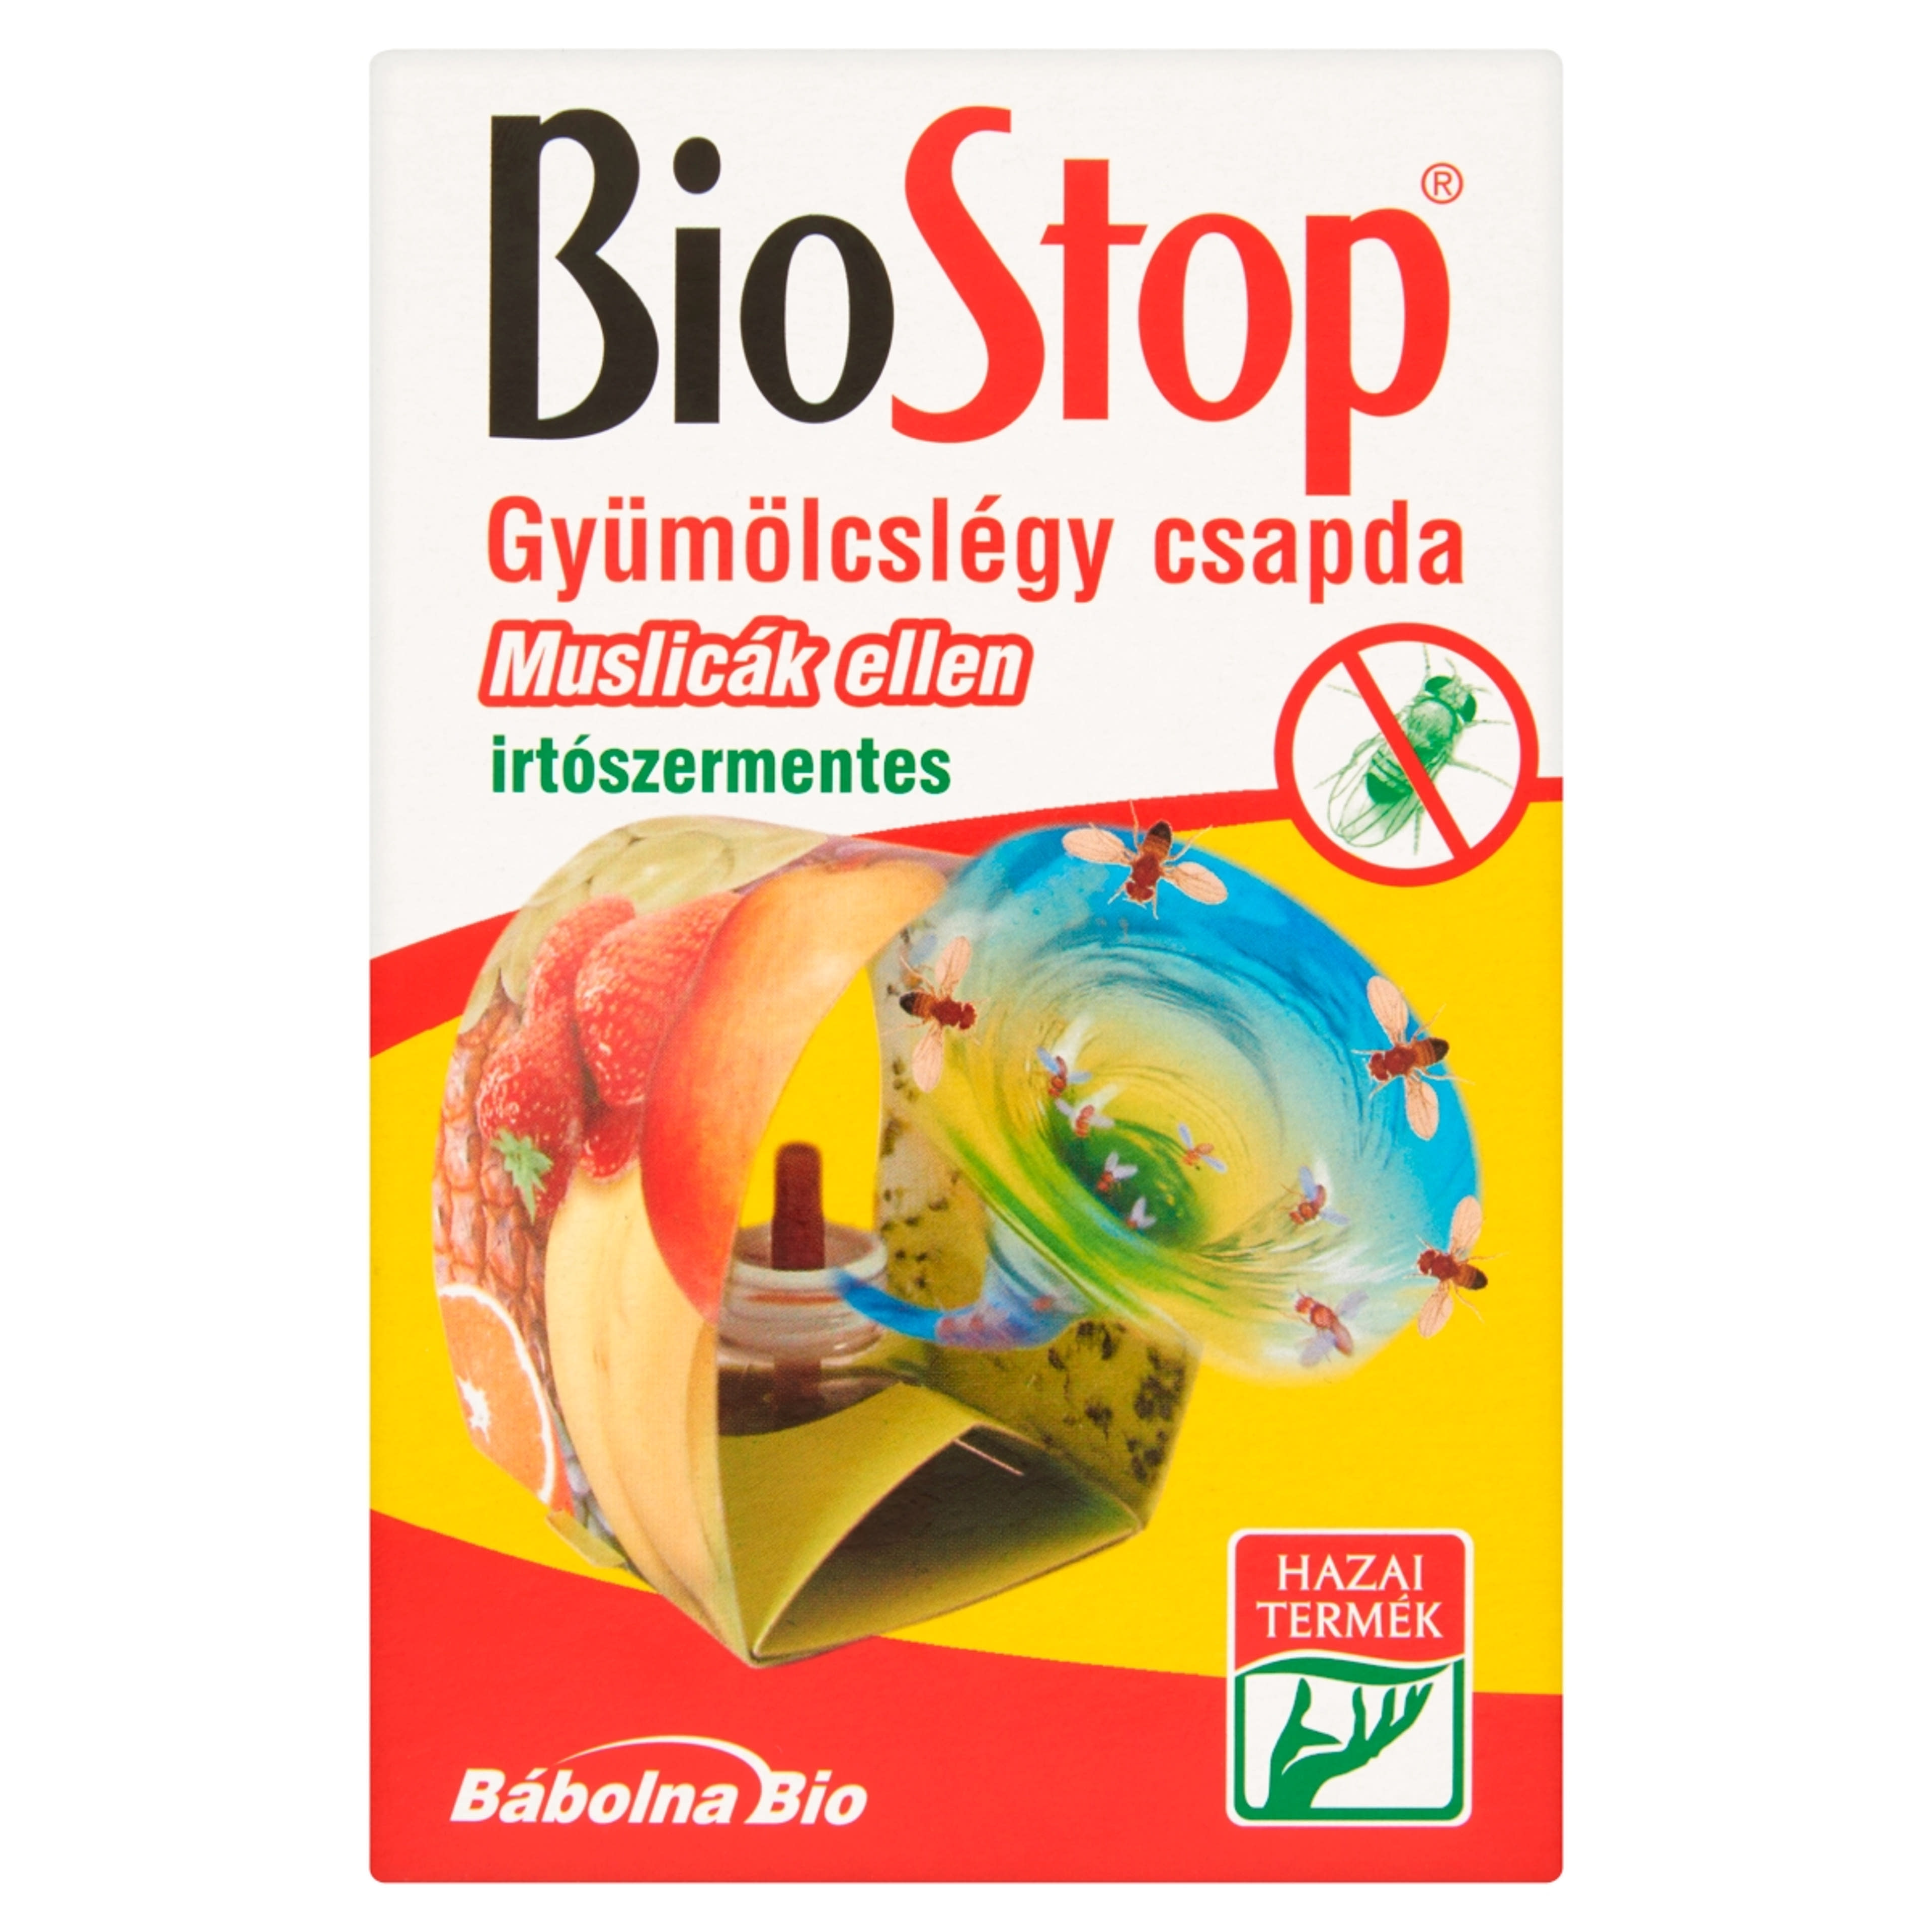 Biostop Gyümölcslégy Csapda - 1 db